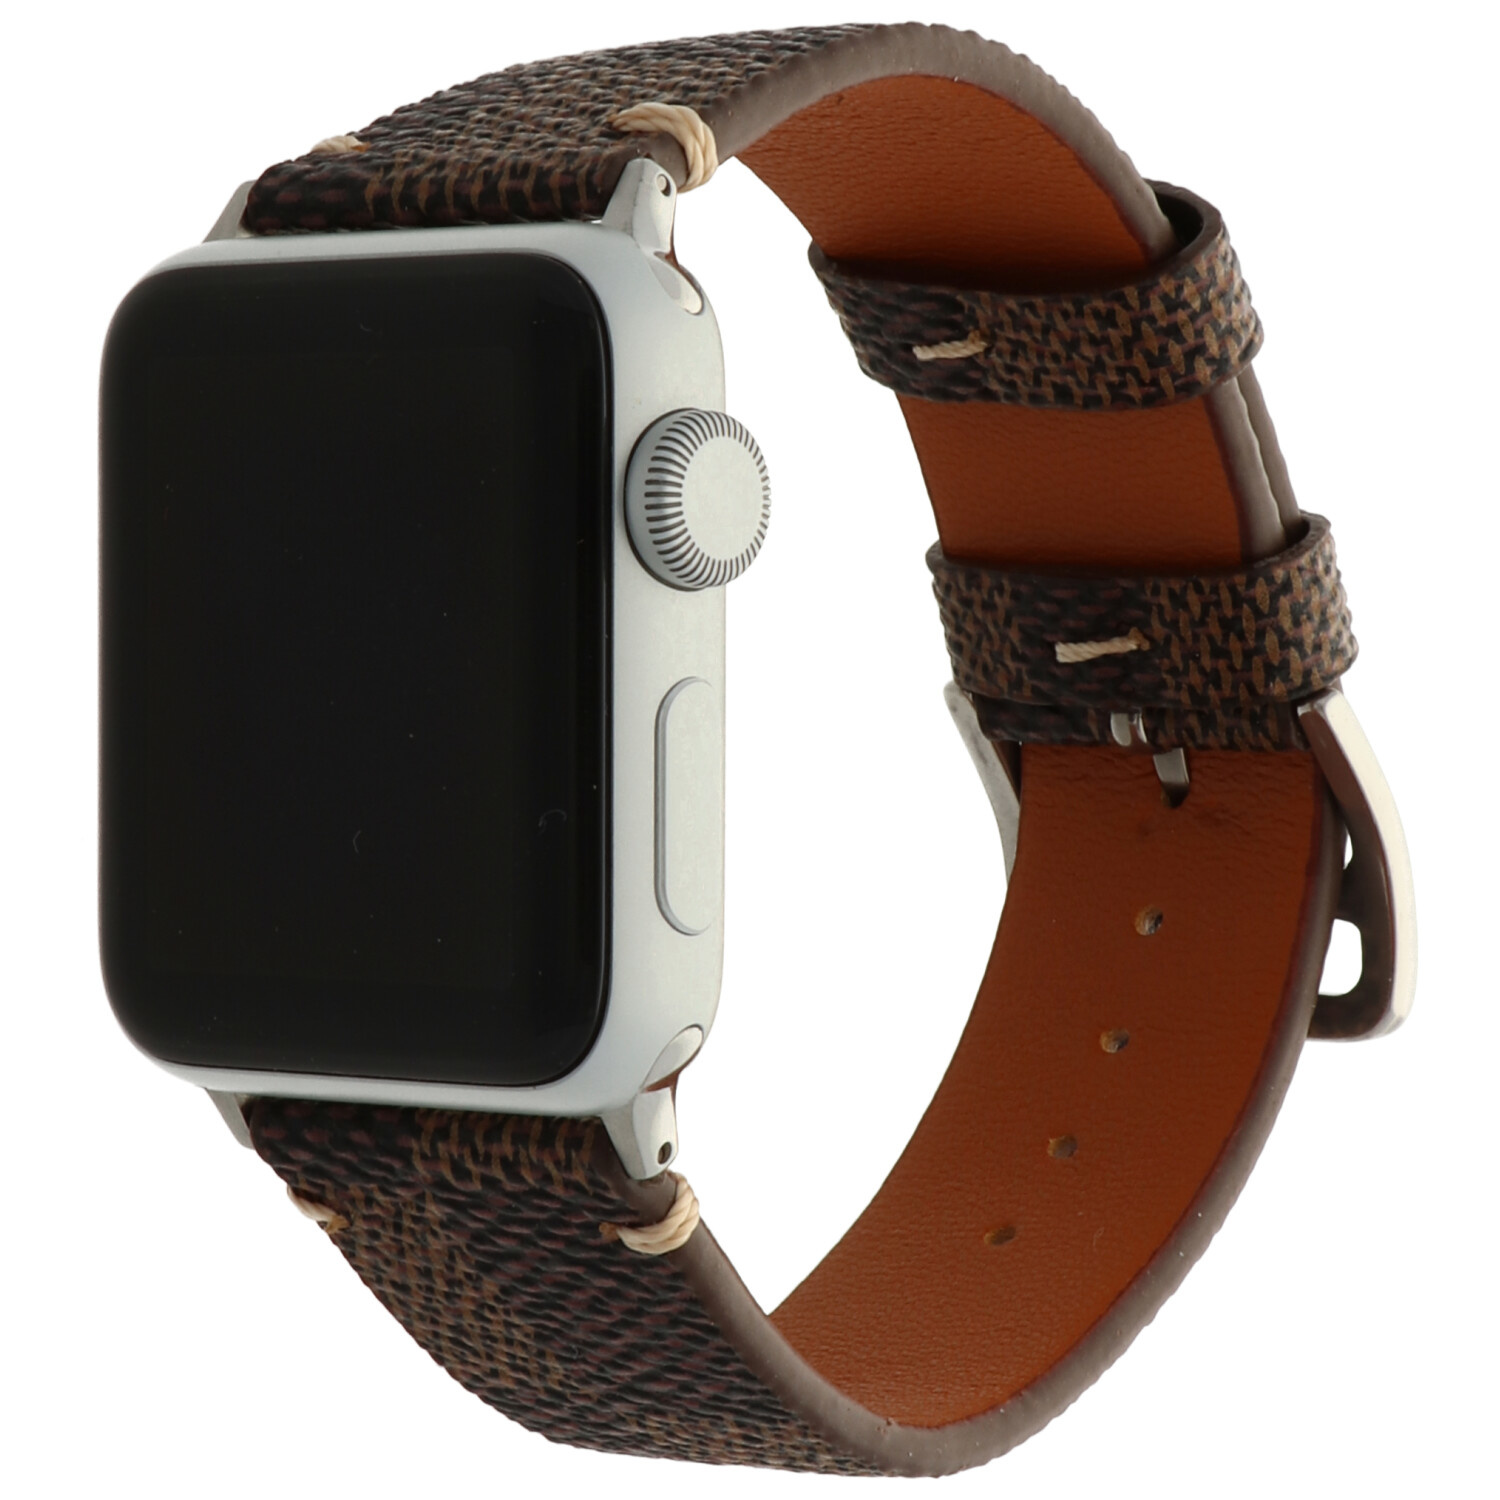  Apple Watch bőr rácsos szalag - barna